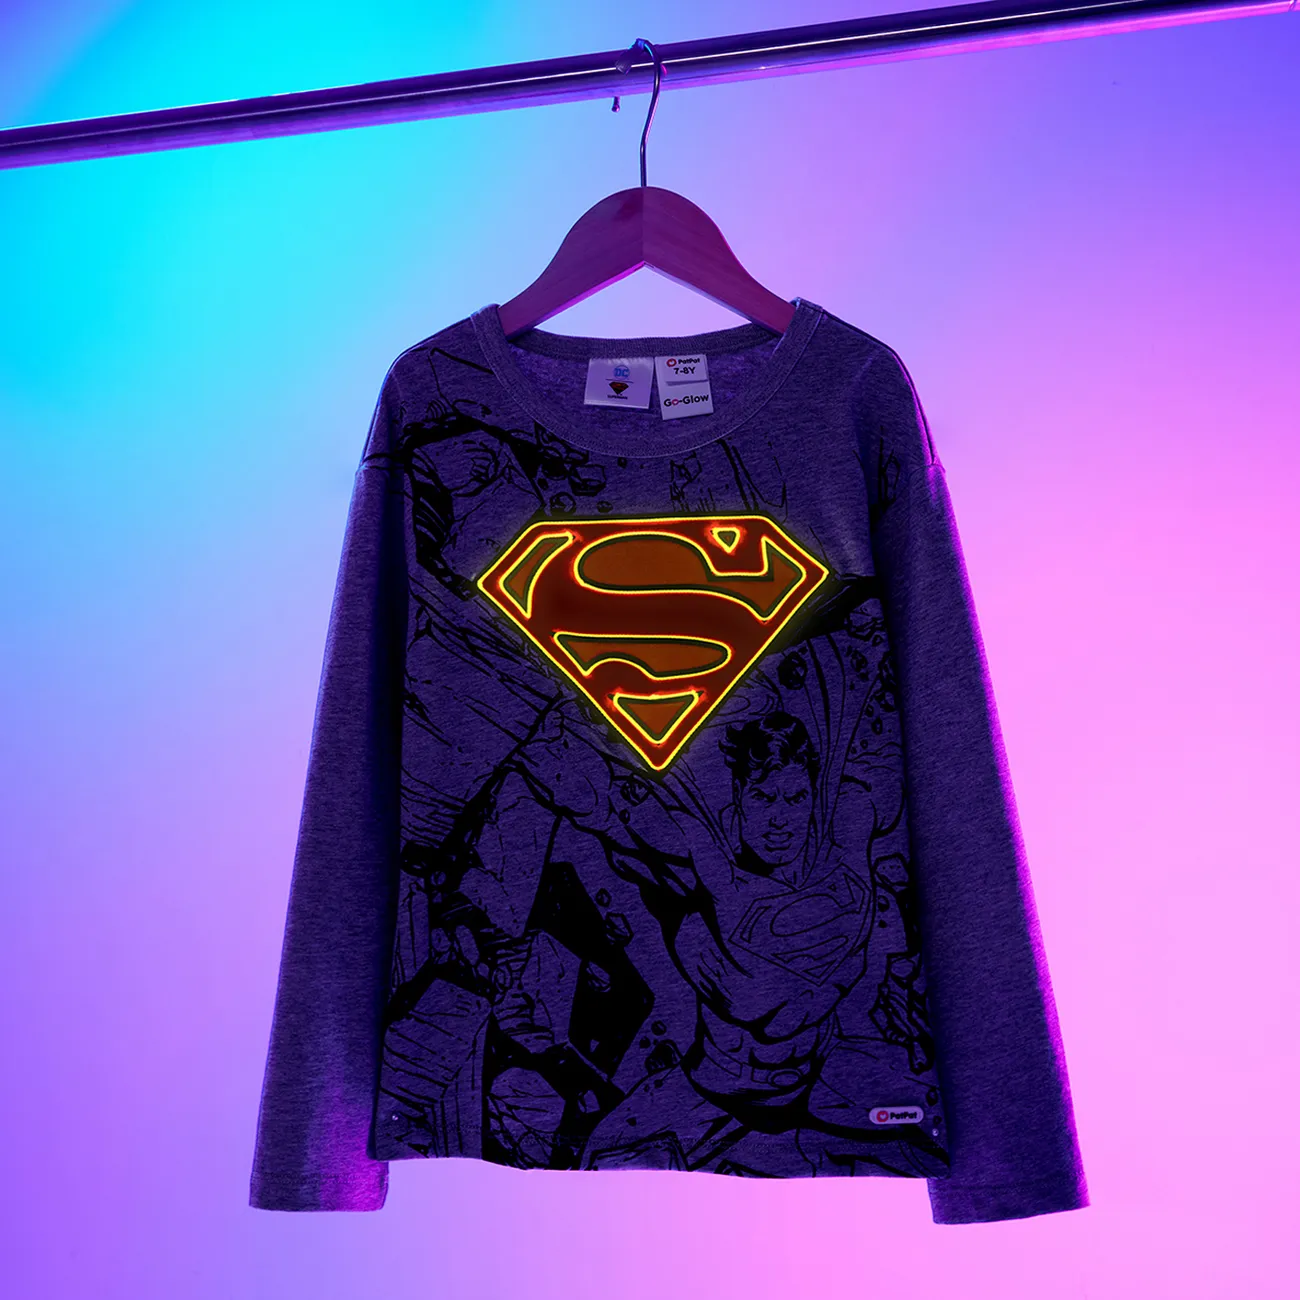 Go-Glow Illuminating Grey Sweatshirt mit leuchtendem Superman-Muster grau gesprenkelt big image 1